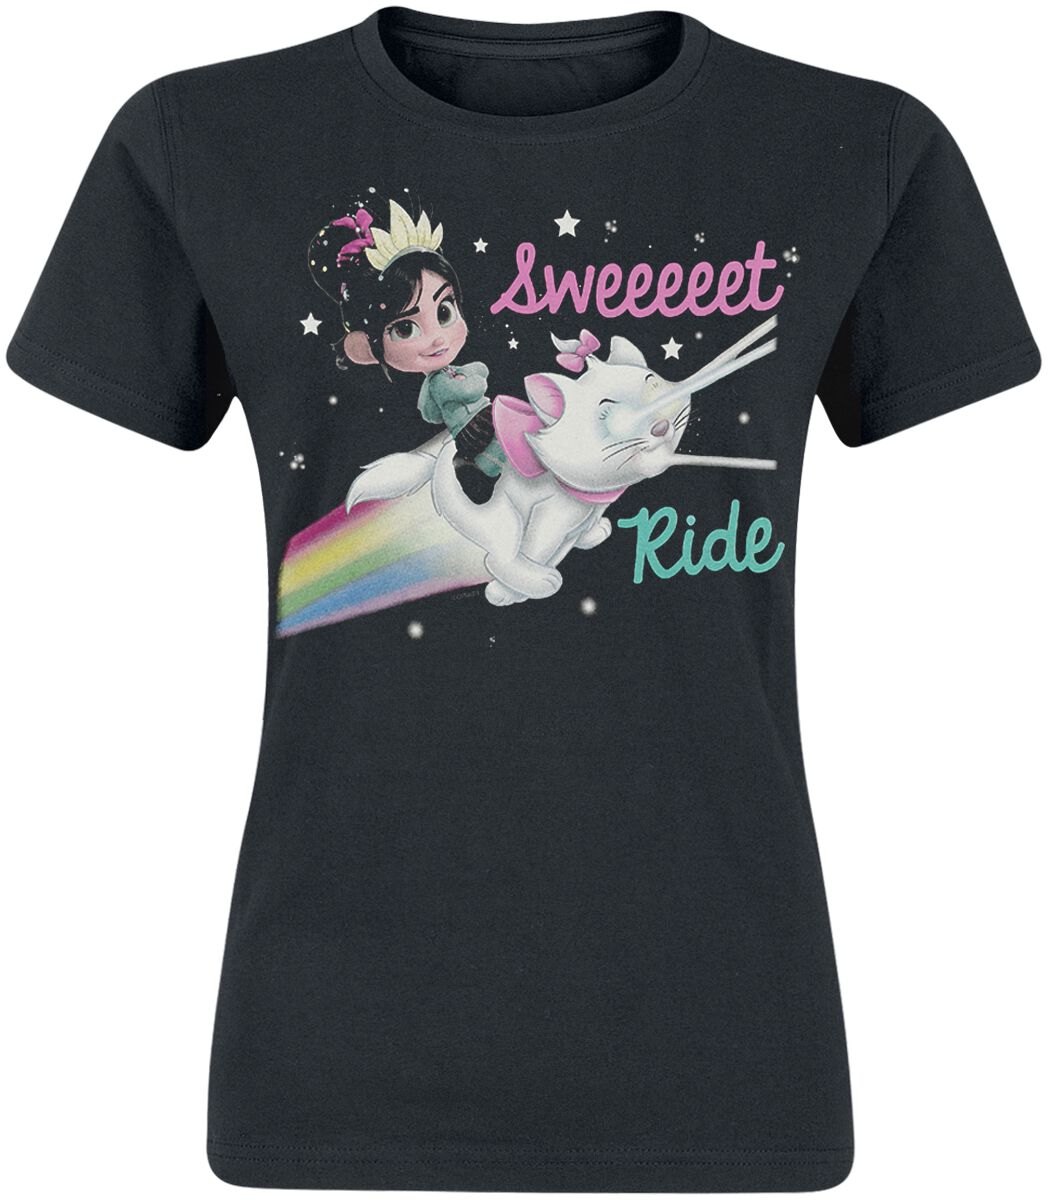 Wreck-It Ralph Sweet Ride Girl T-Shirt black